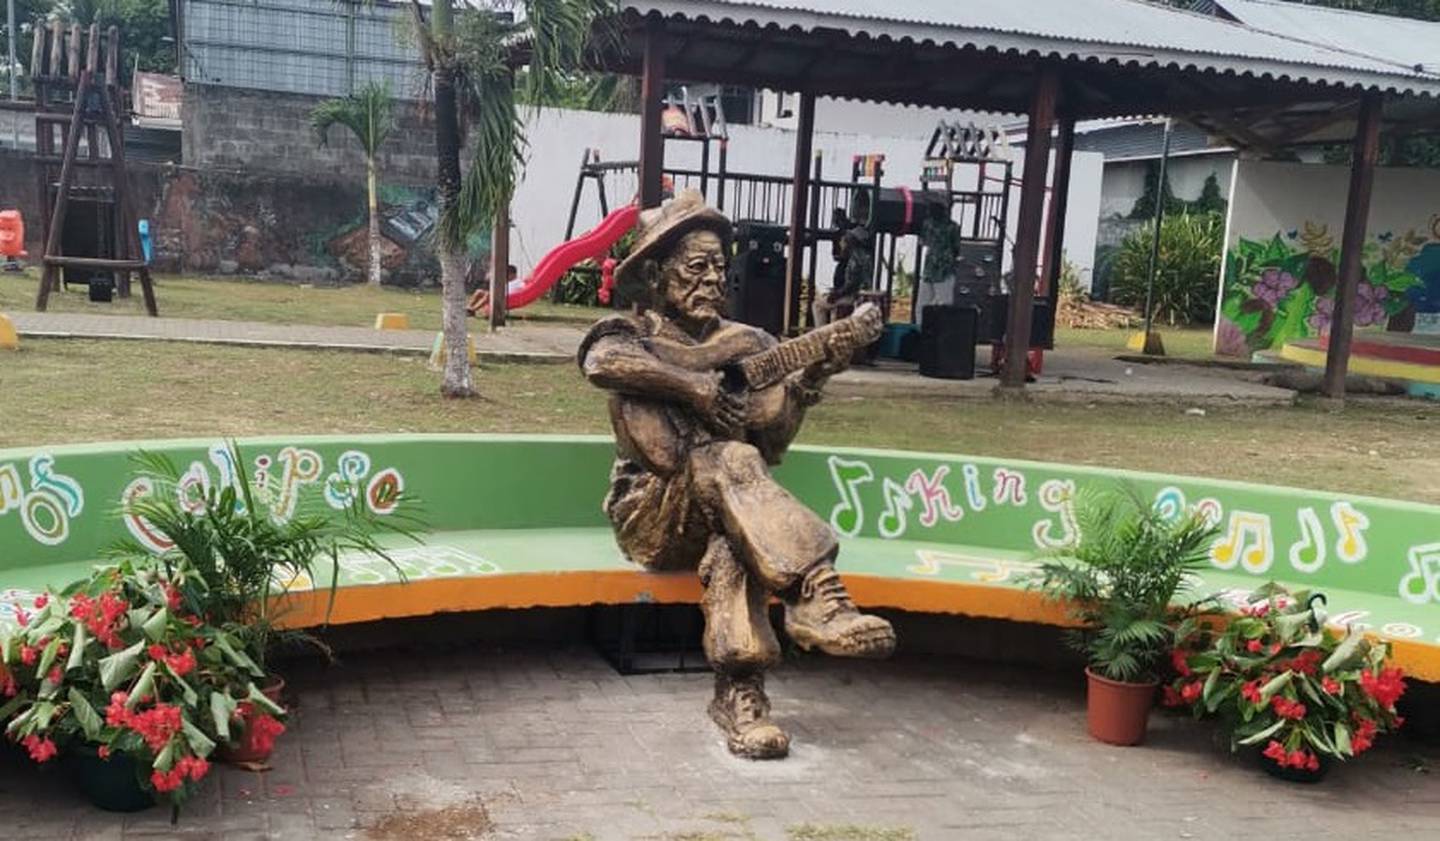 Develación de la escultura en honor al artista costarricense Walter Ferguson. Foto cortesía Laura Chaves.